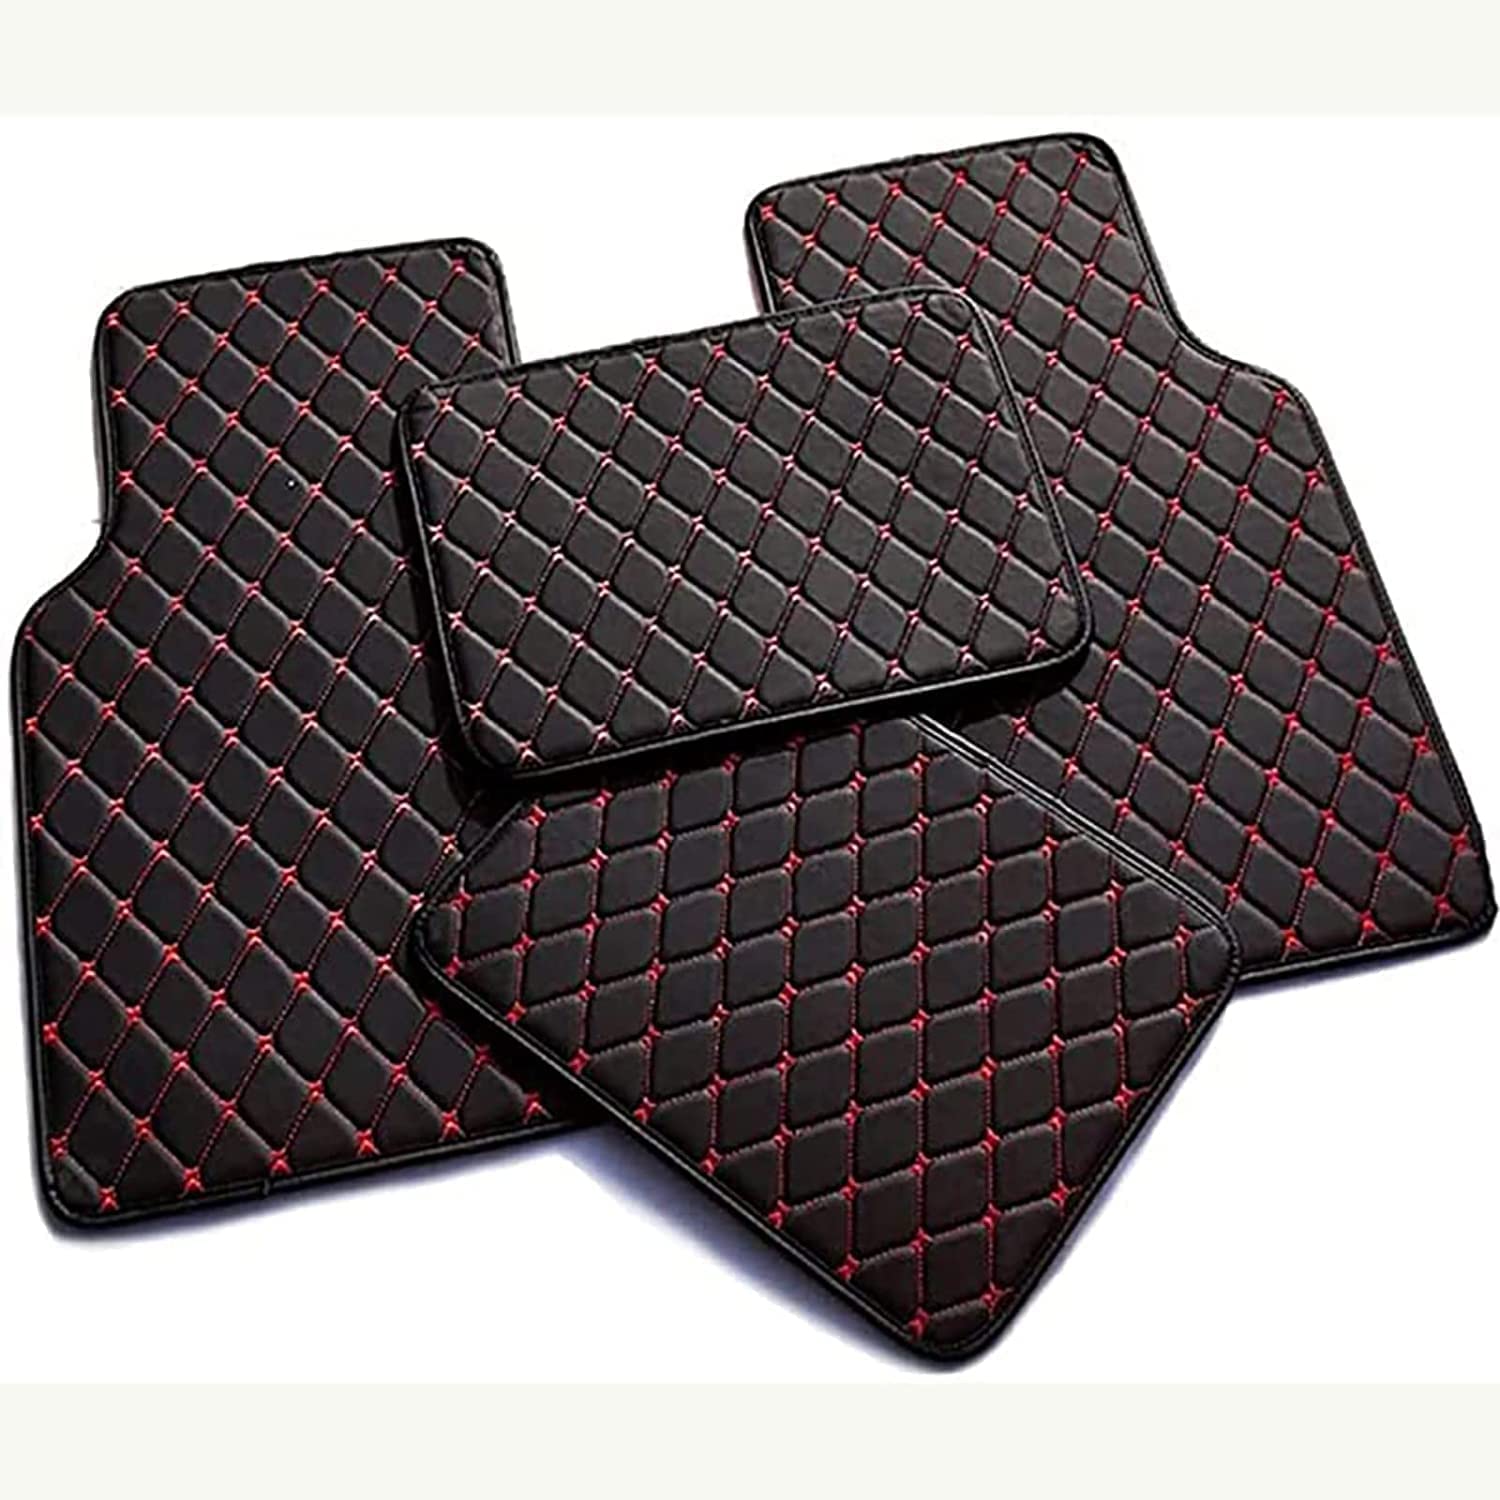 4Pcs Auto Fußmatten PU Leder Fußmatten Automotive Liner für Audi S7 2013-2019,Vorne Hinten Matten Fuß pad Protector,D-Black-red von LOKORI